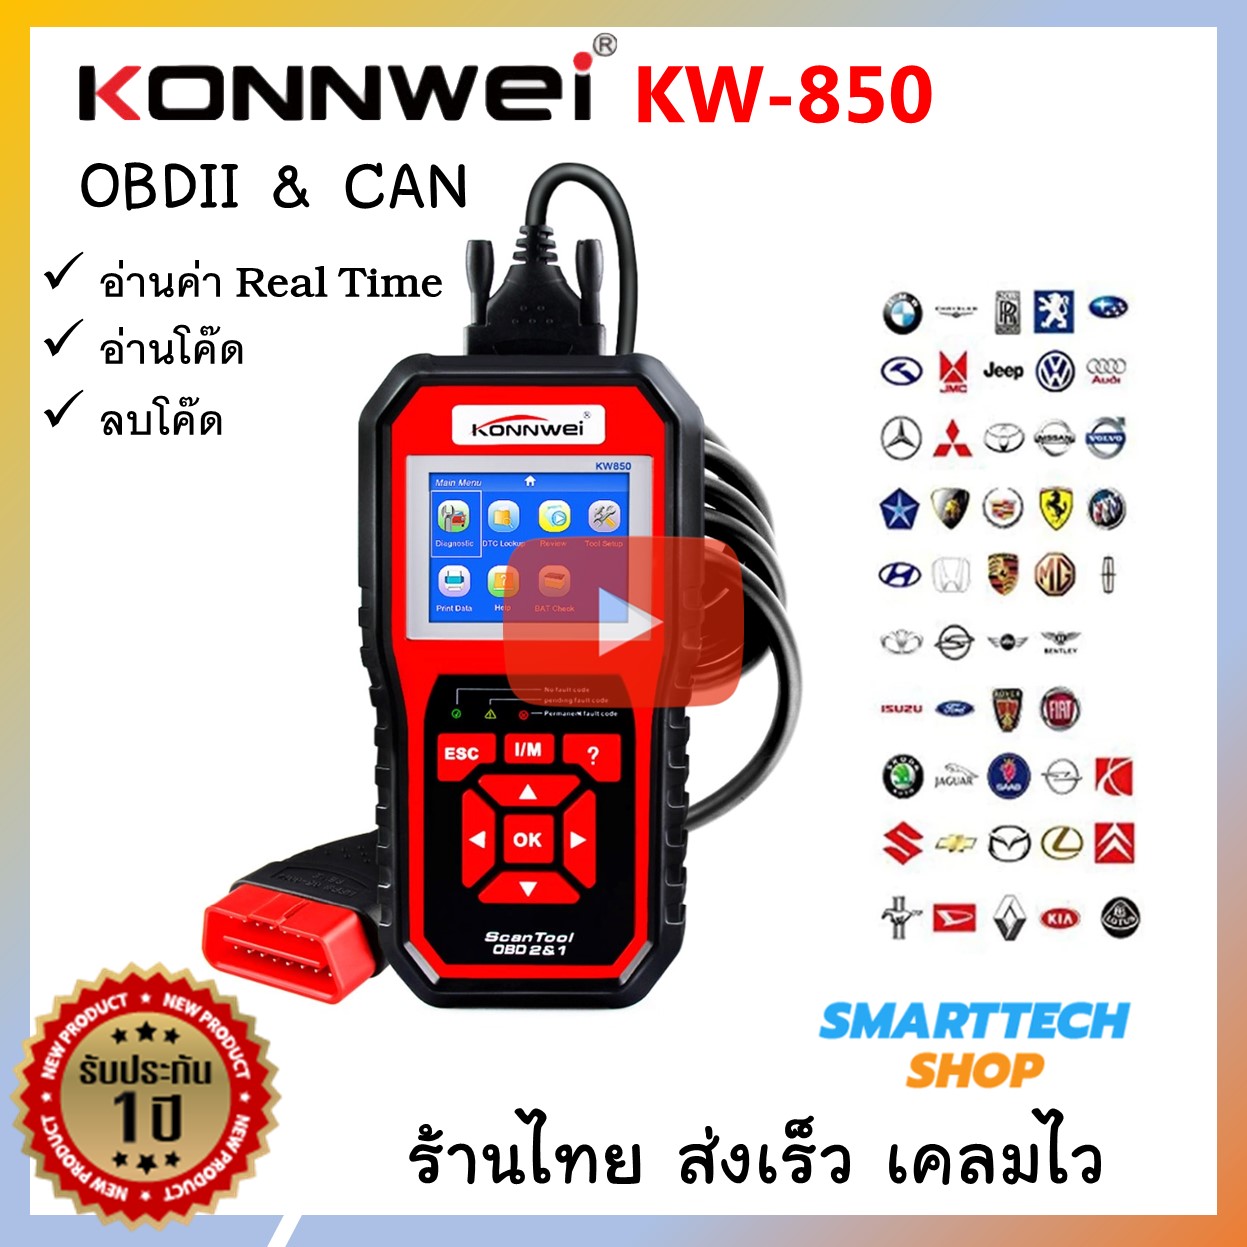 KONNWEI KW850 OBD II อ่านโค๊ด ลบโค๊ด อ่านค่า Real Time ร้านคนไทย ประกัน 1 ปี